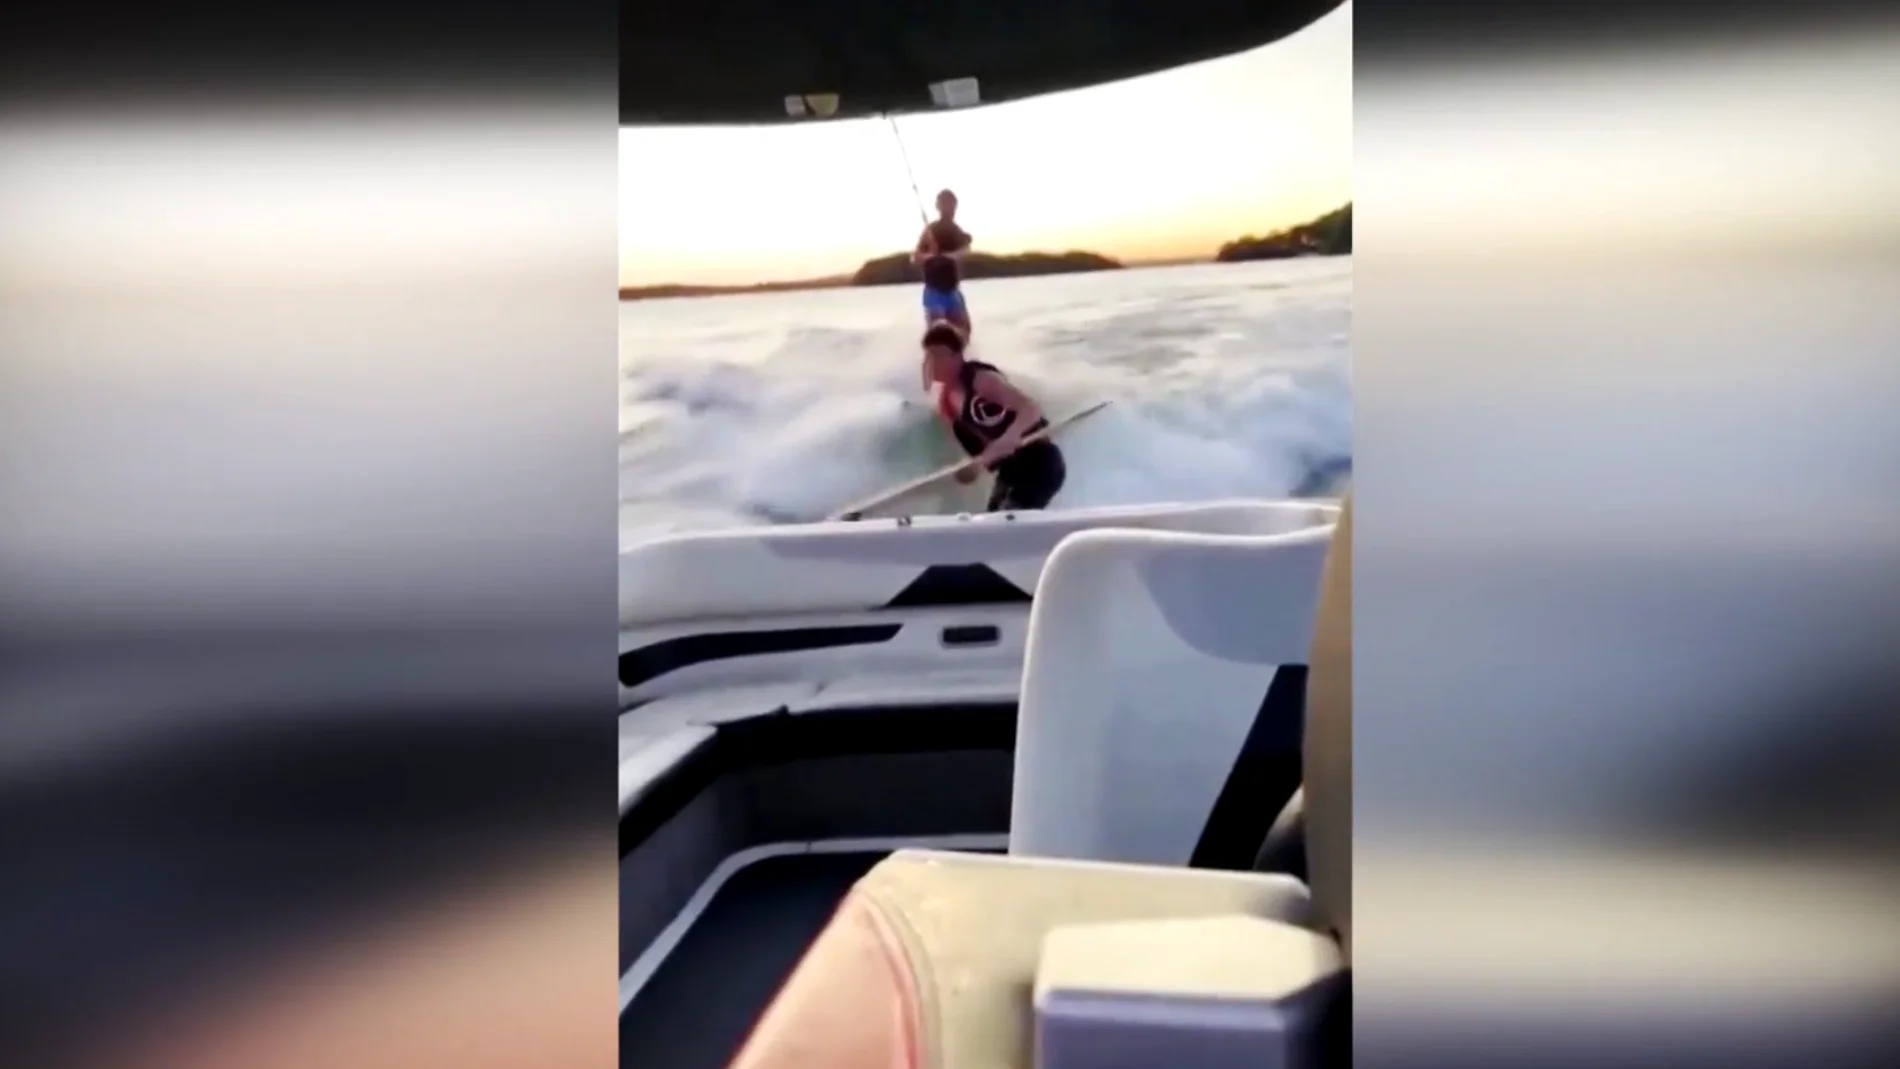 El vídeo más viral de la semana: la insensatez de un joven al dejar solo el barco para ponerse a surfear